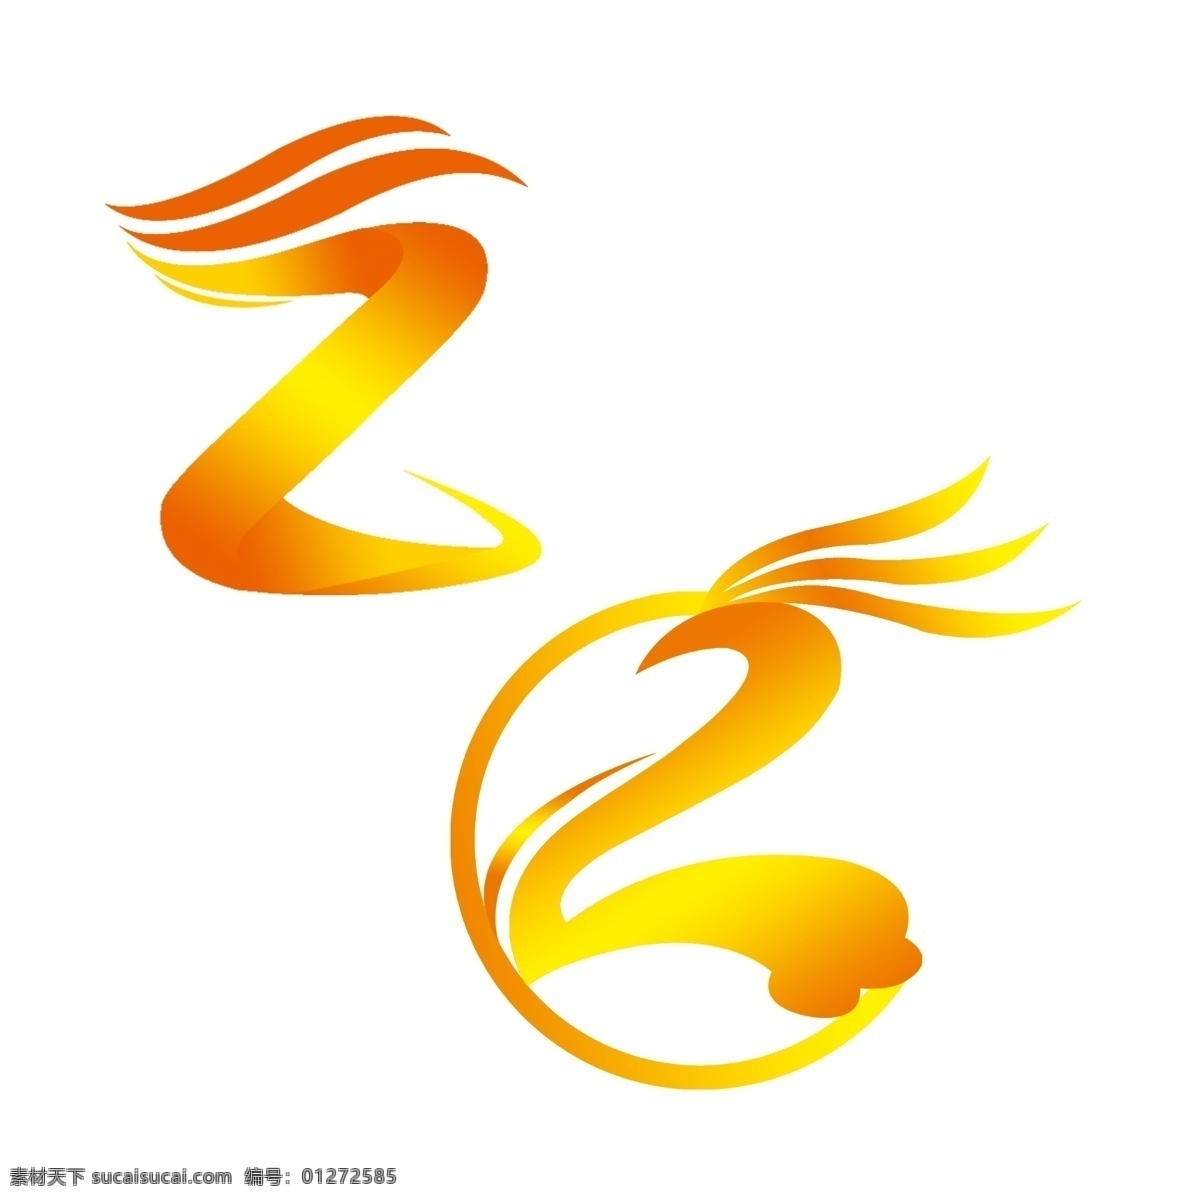 标志logo logo 标志 矢量图 分层 可修改 创意 发廊标 教育标 祥云 z 字母 翅膀 标志图标 企业 白色